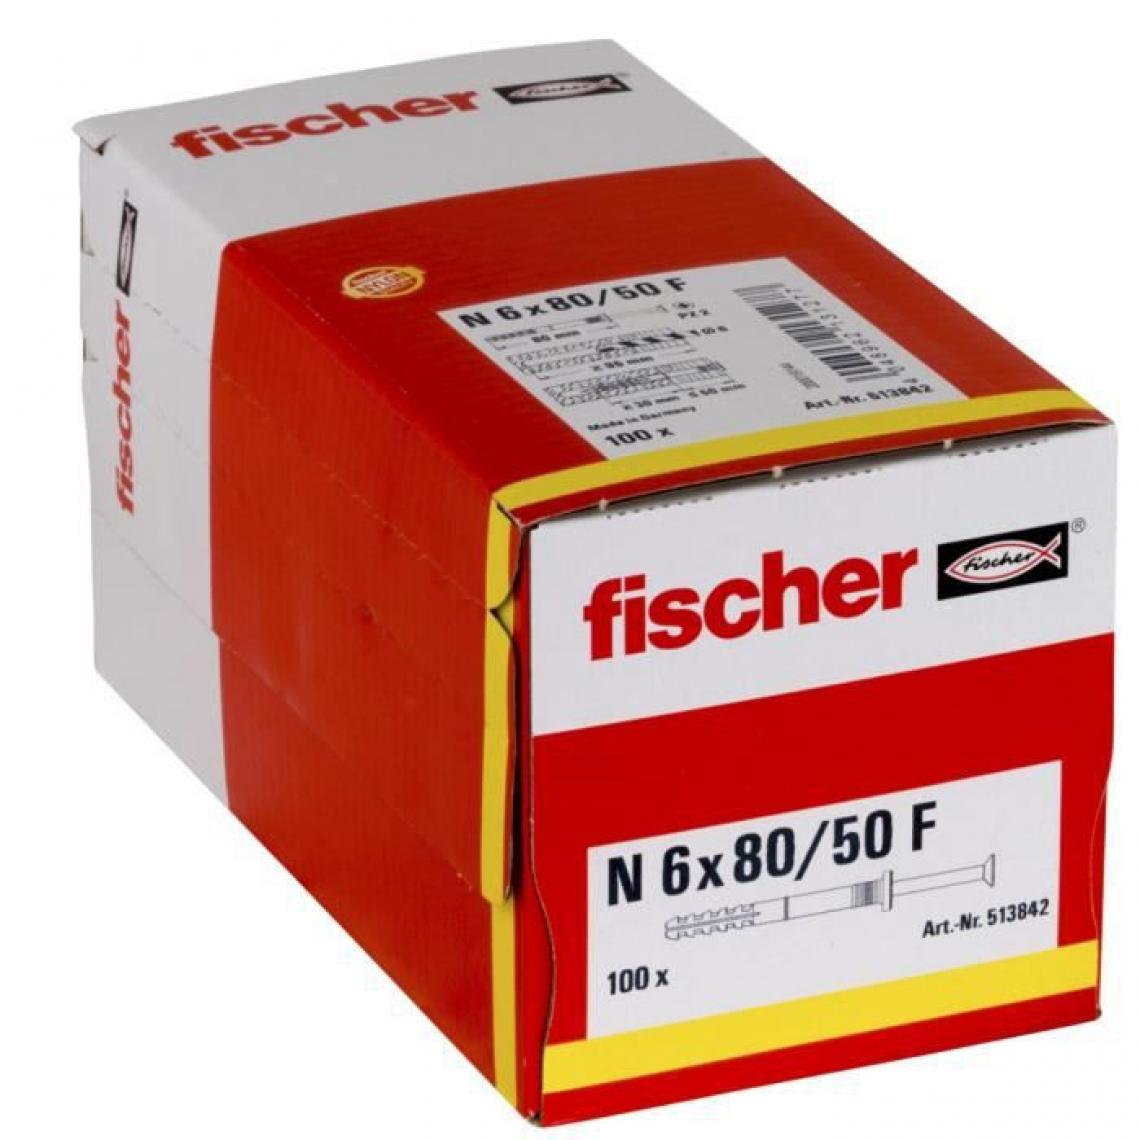 Fischer - FISCHER - Cheville clou NF 6x80/50 avec collerette épaisse et clou tete fraisée - Boîte de 100 - Cheville